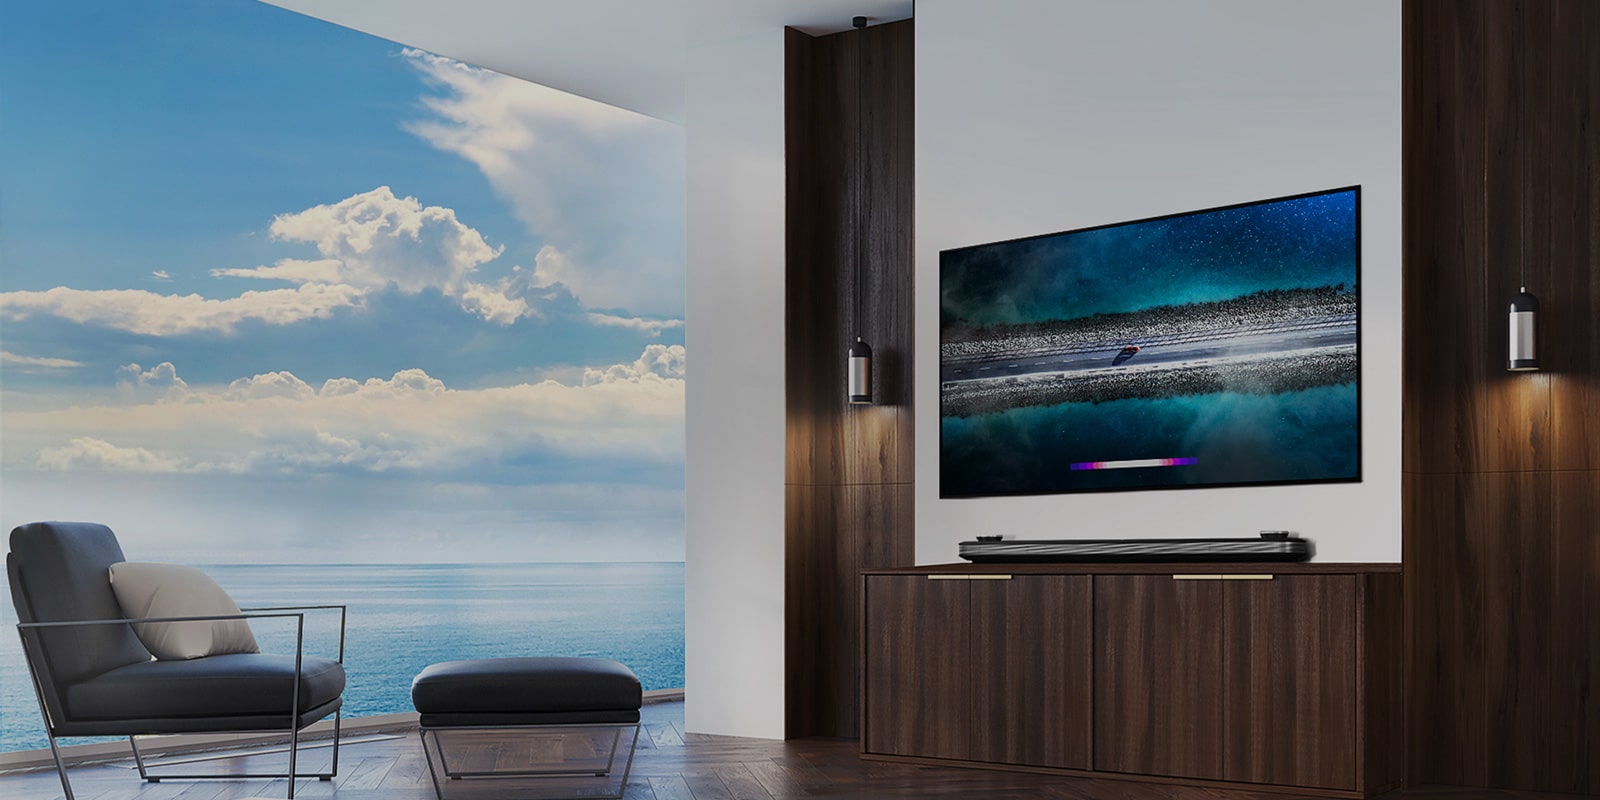 LG تم تعليق تلفزيون SIGNATURE OLED TV W9 على الحائط ووضع أريكة أمام التلفاز مع وجود السماء الزرقاء فوق النافذة.			